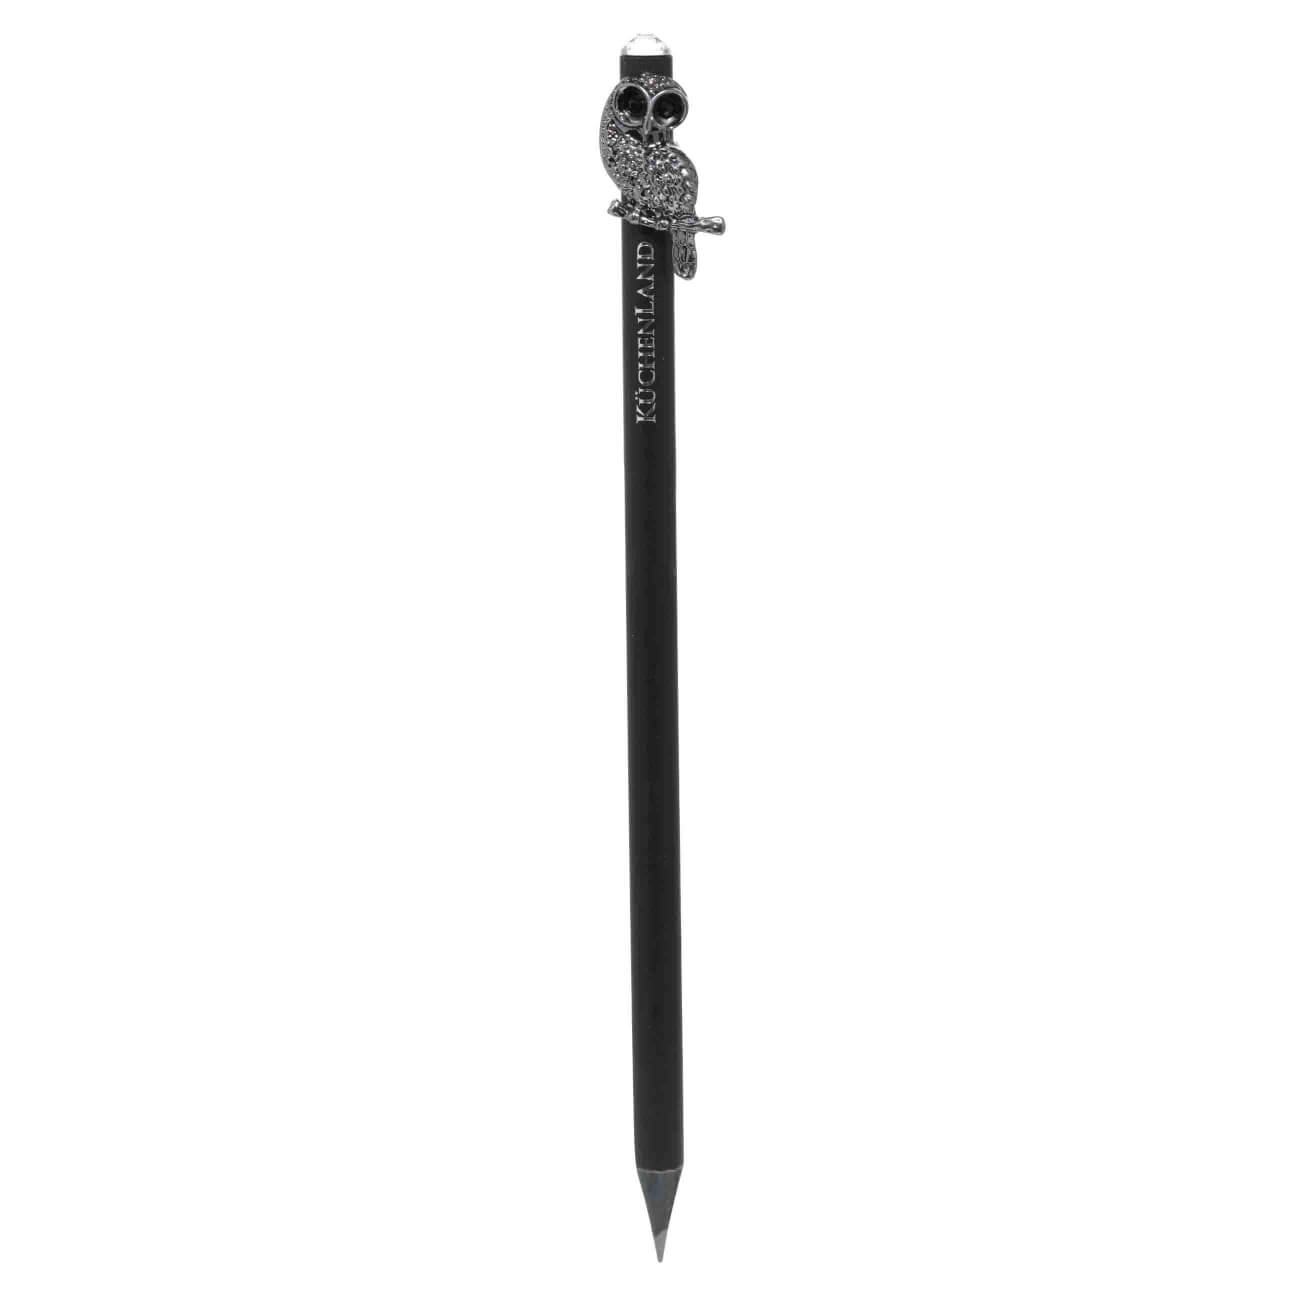 Карандаш, 18 см, чернографитный, с фигуркой, черный, Сова, Draw figure чернографитный карандаш hatber